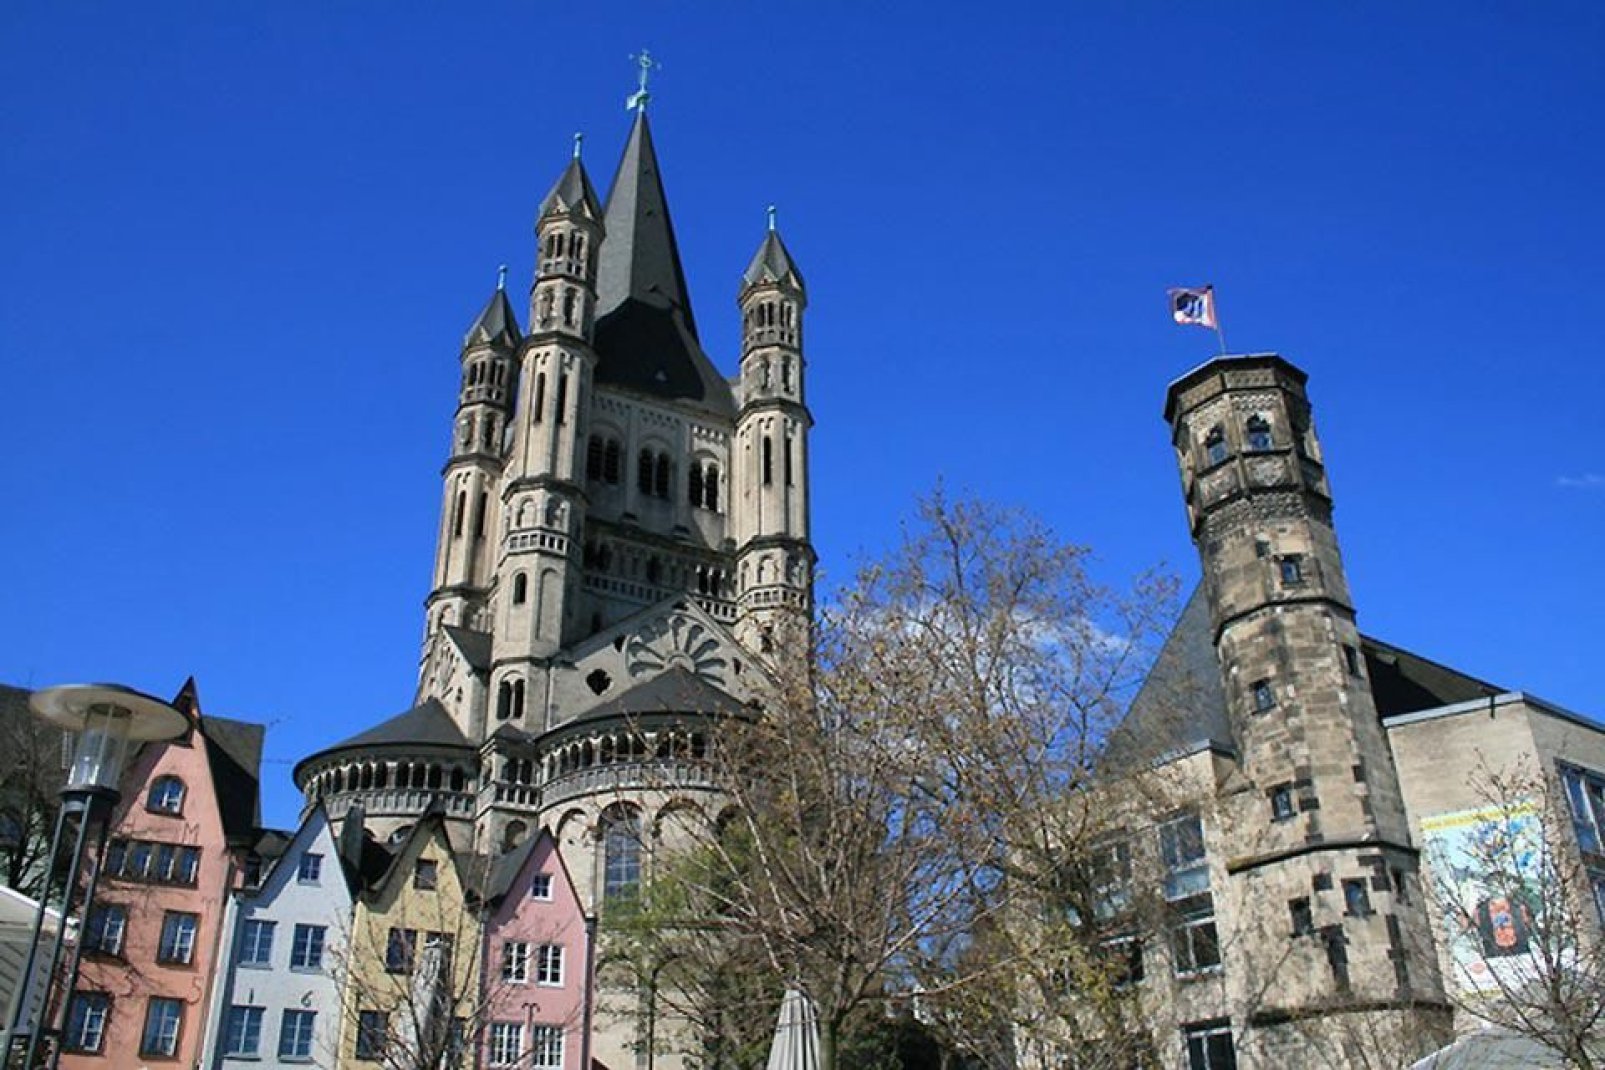 La vieille ville de Cologne a plusieurs places avec des maisons colorées à montrer.